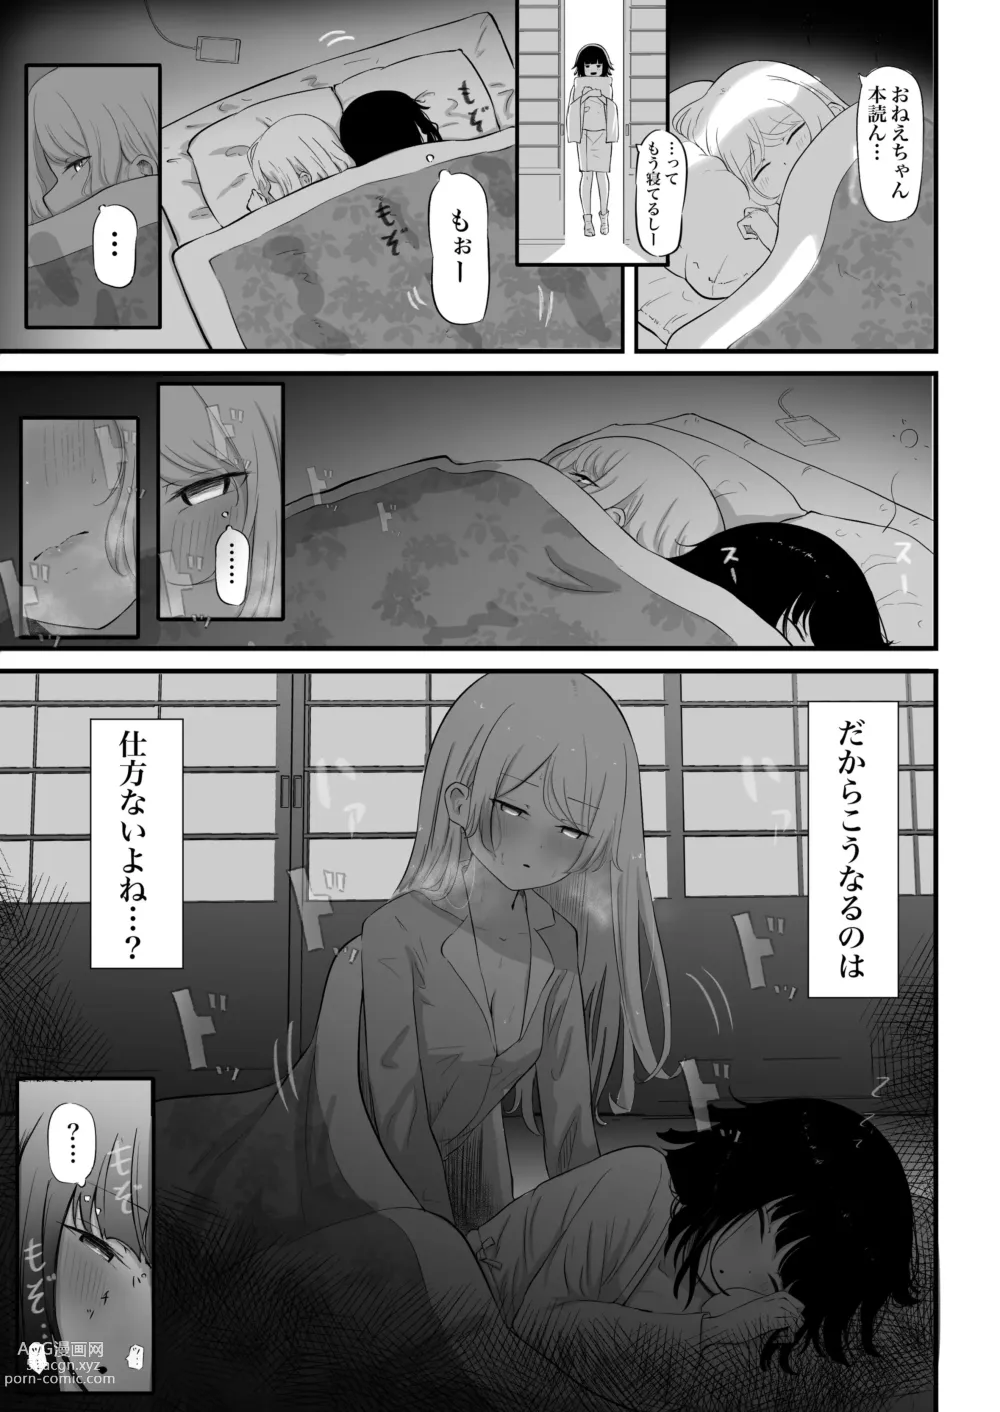 Page 6 of doujinshi Watashi no Ie ni wa Zashikiwarashi ga Imasu.